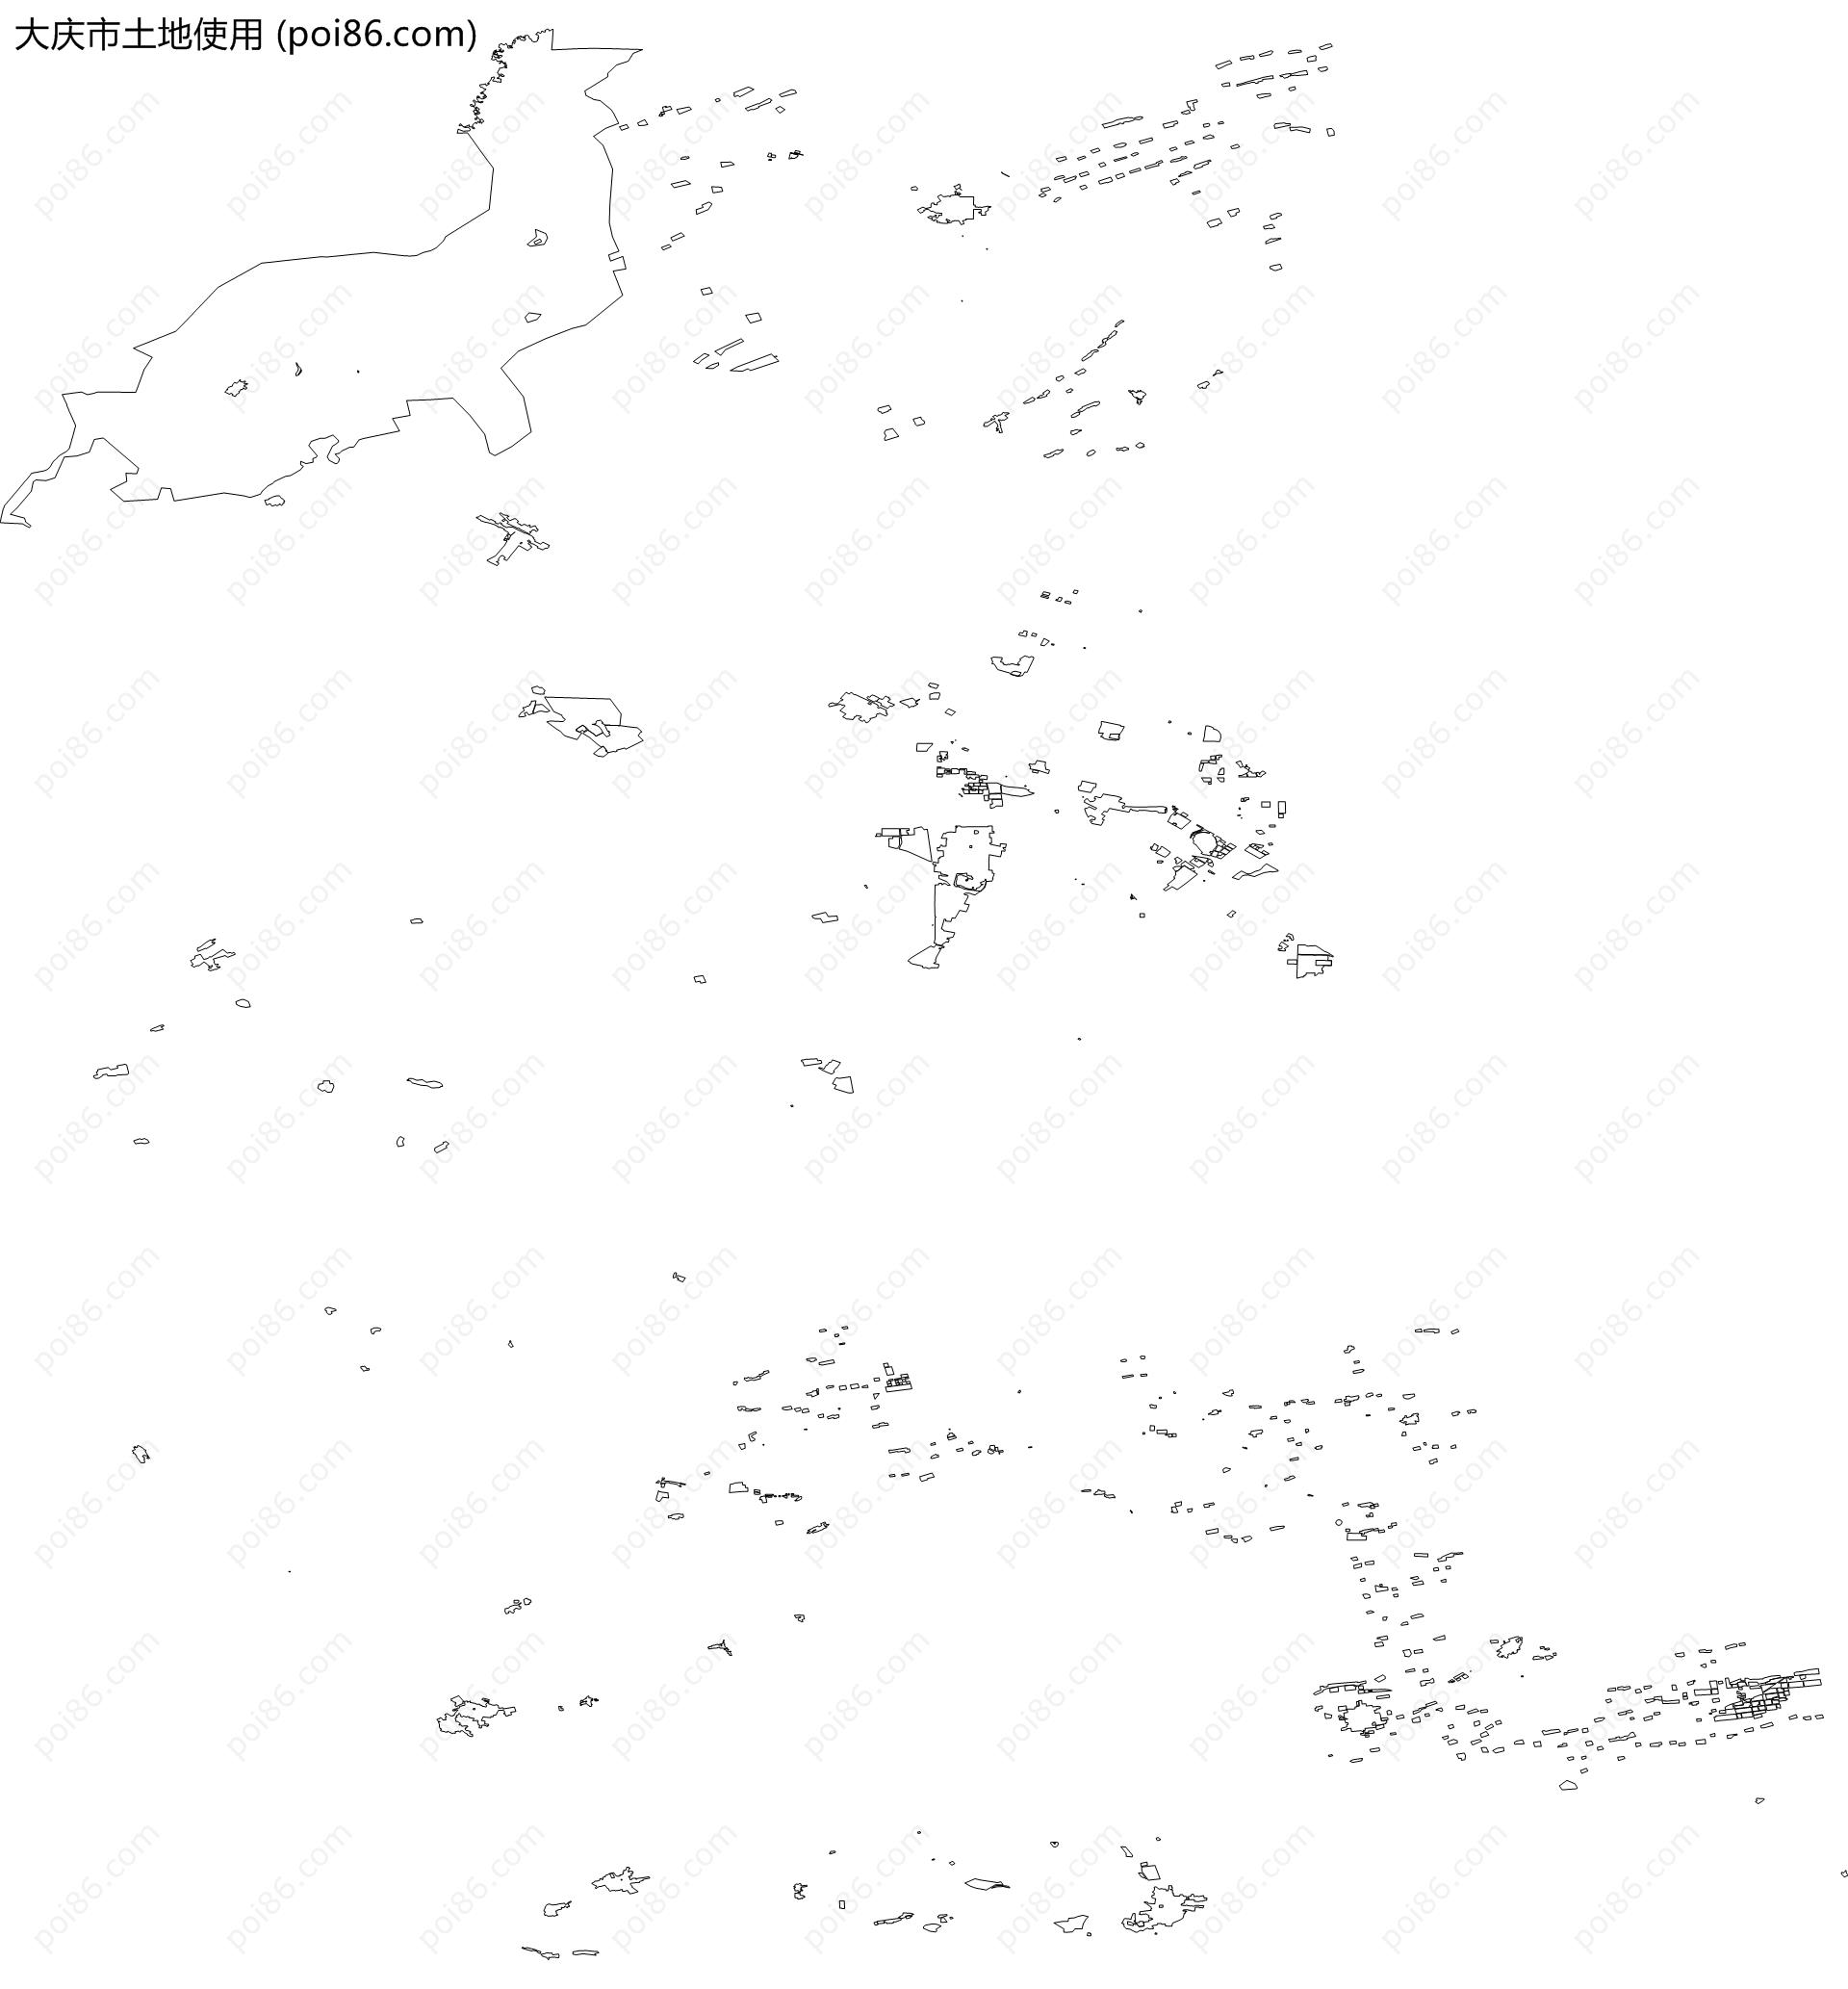 大庆市土地使用地图